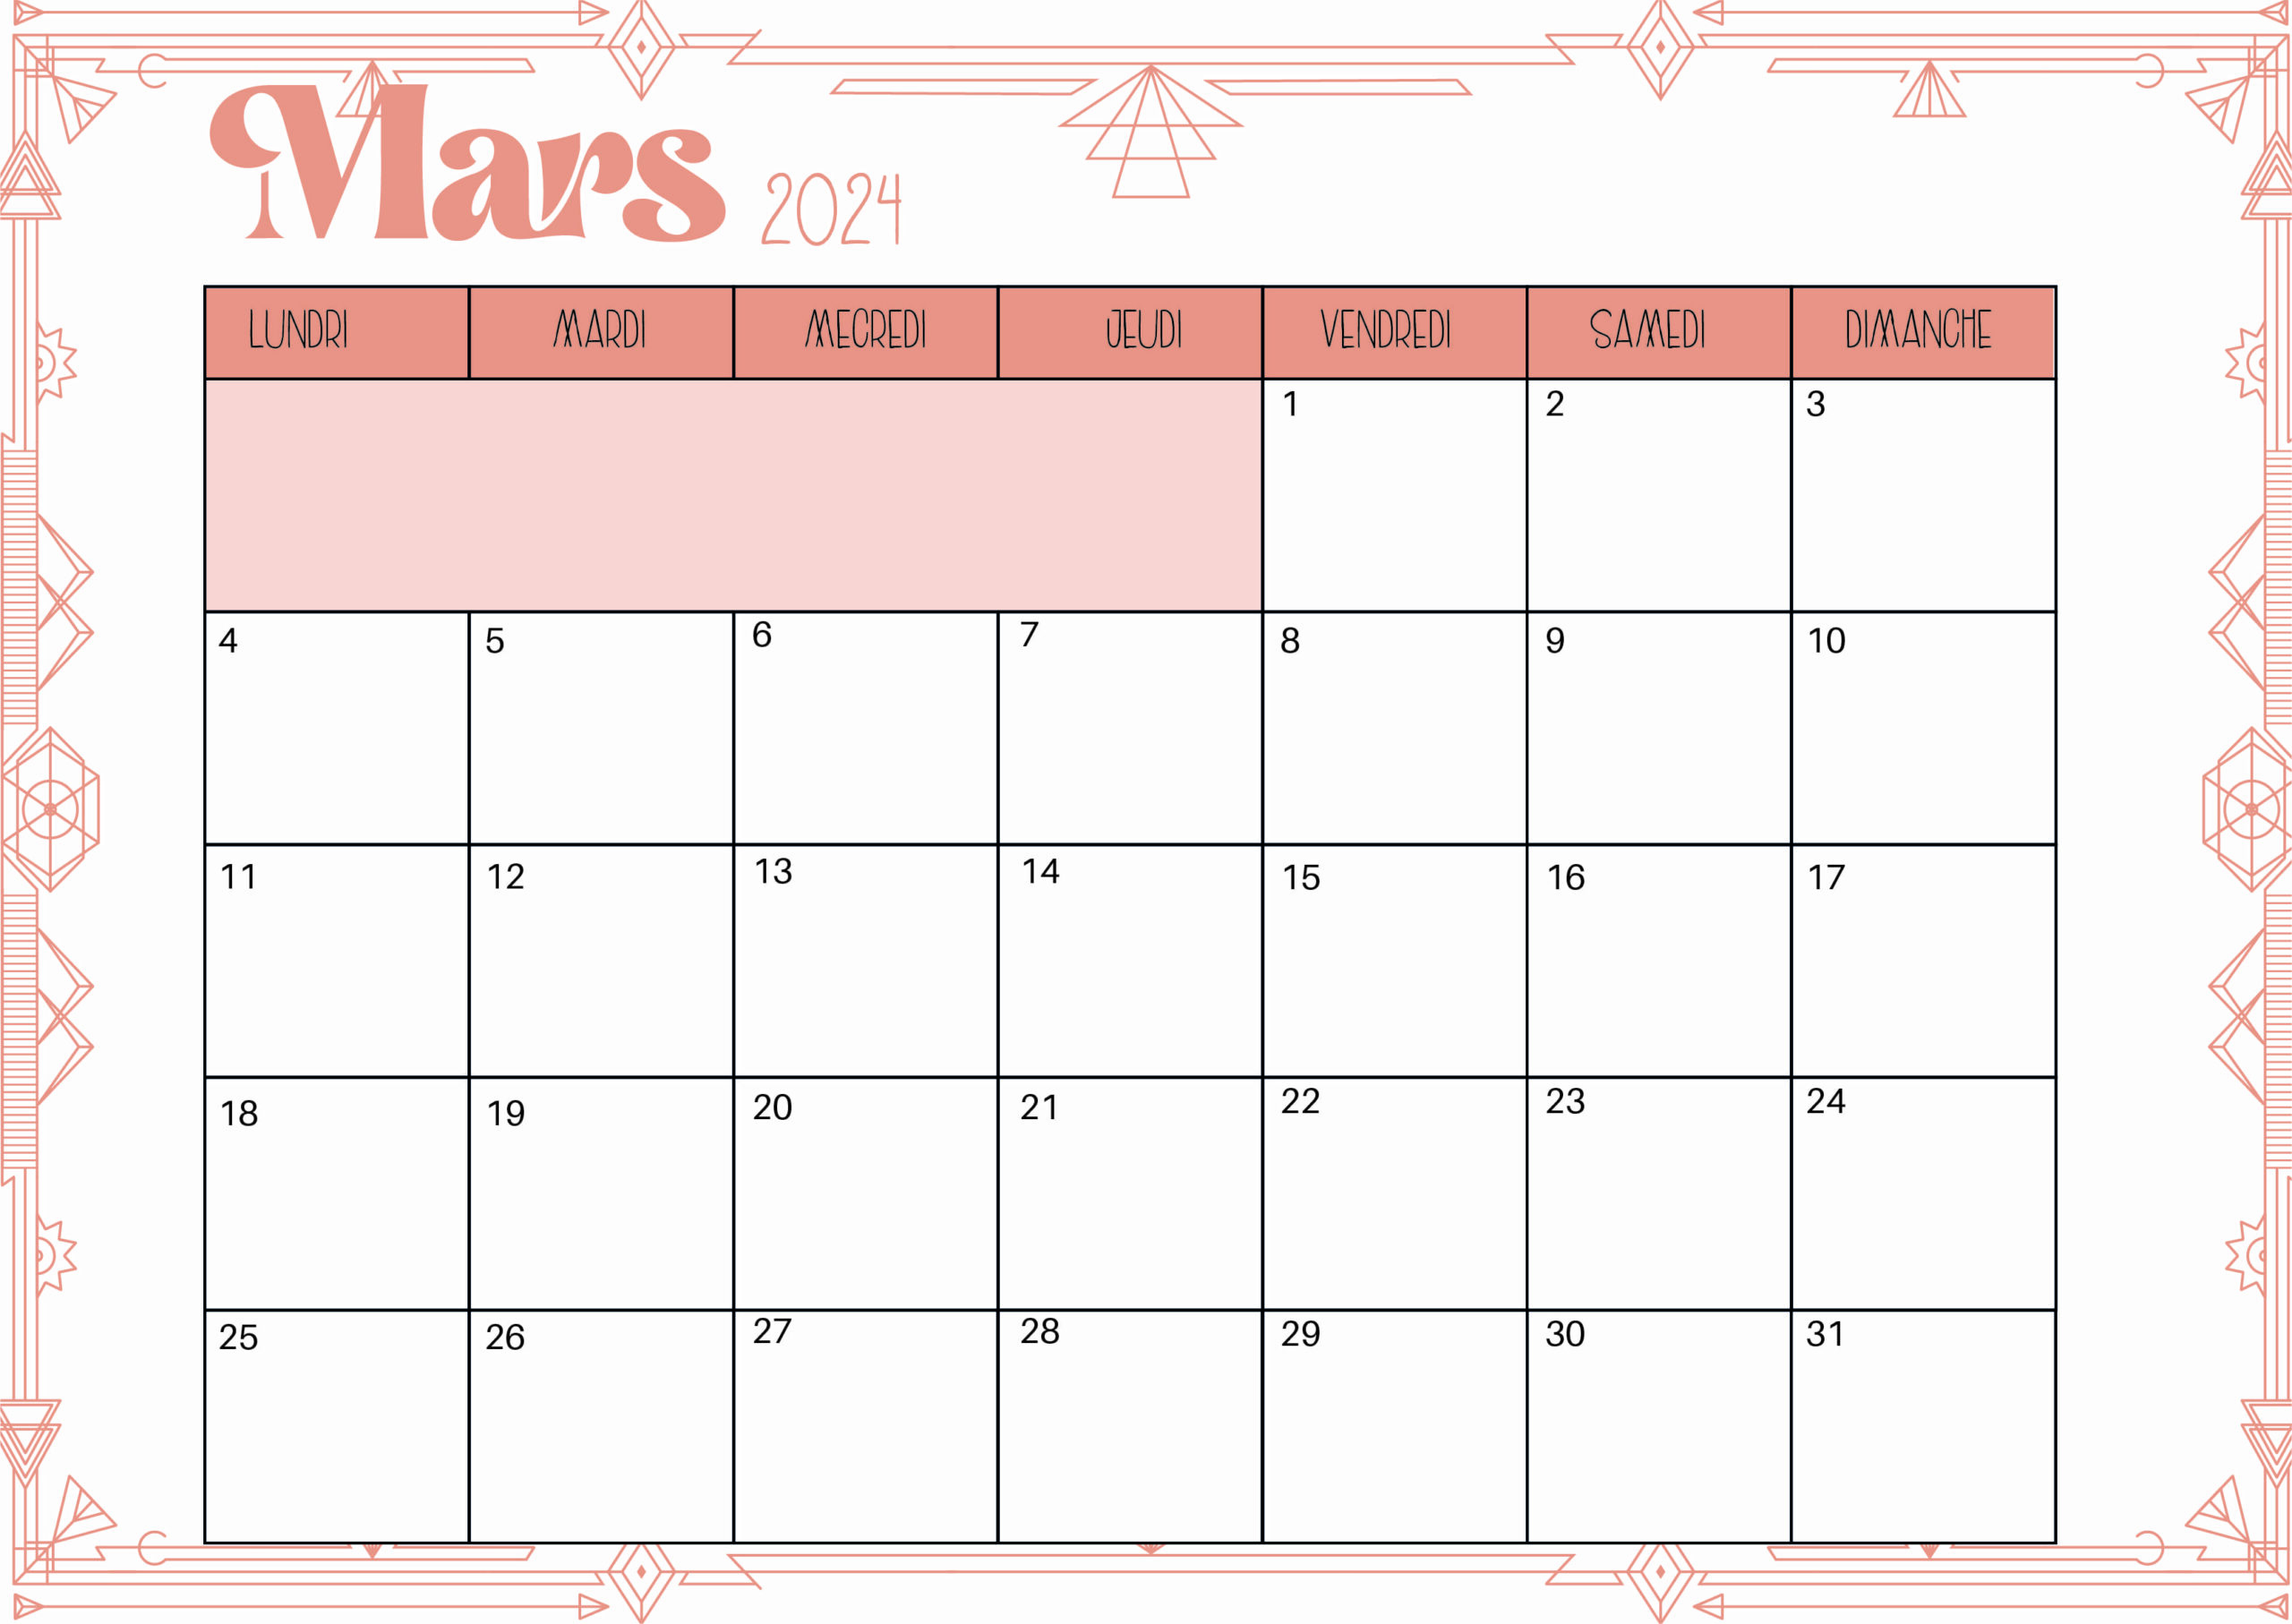 Calendrier de Mars 2024 à imprimer